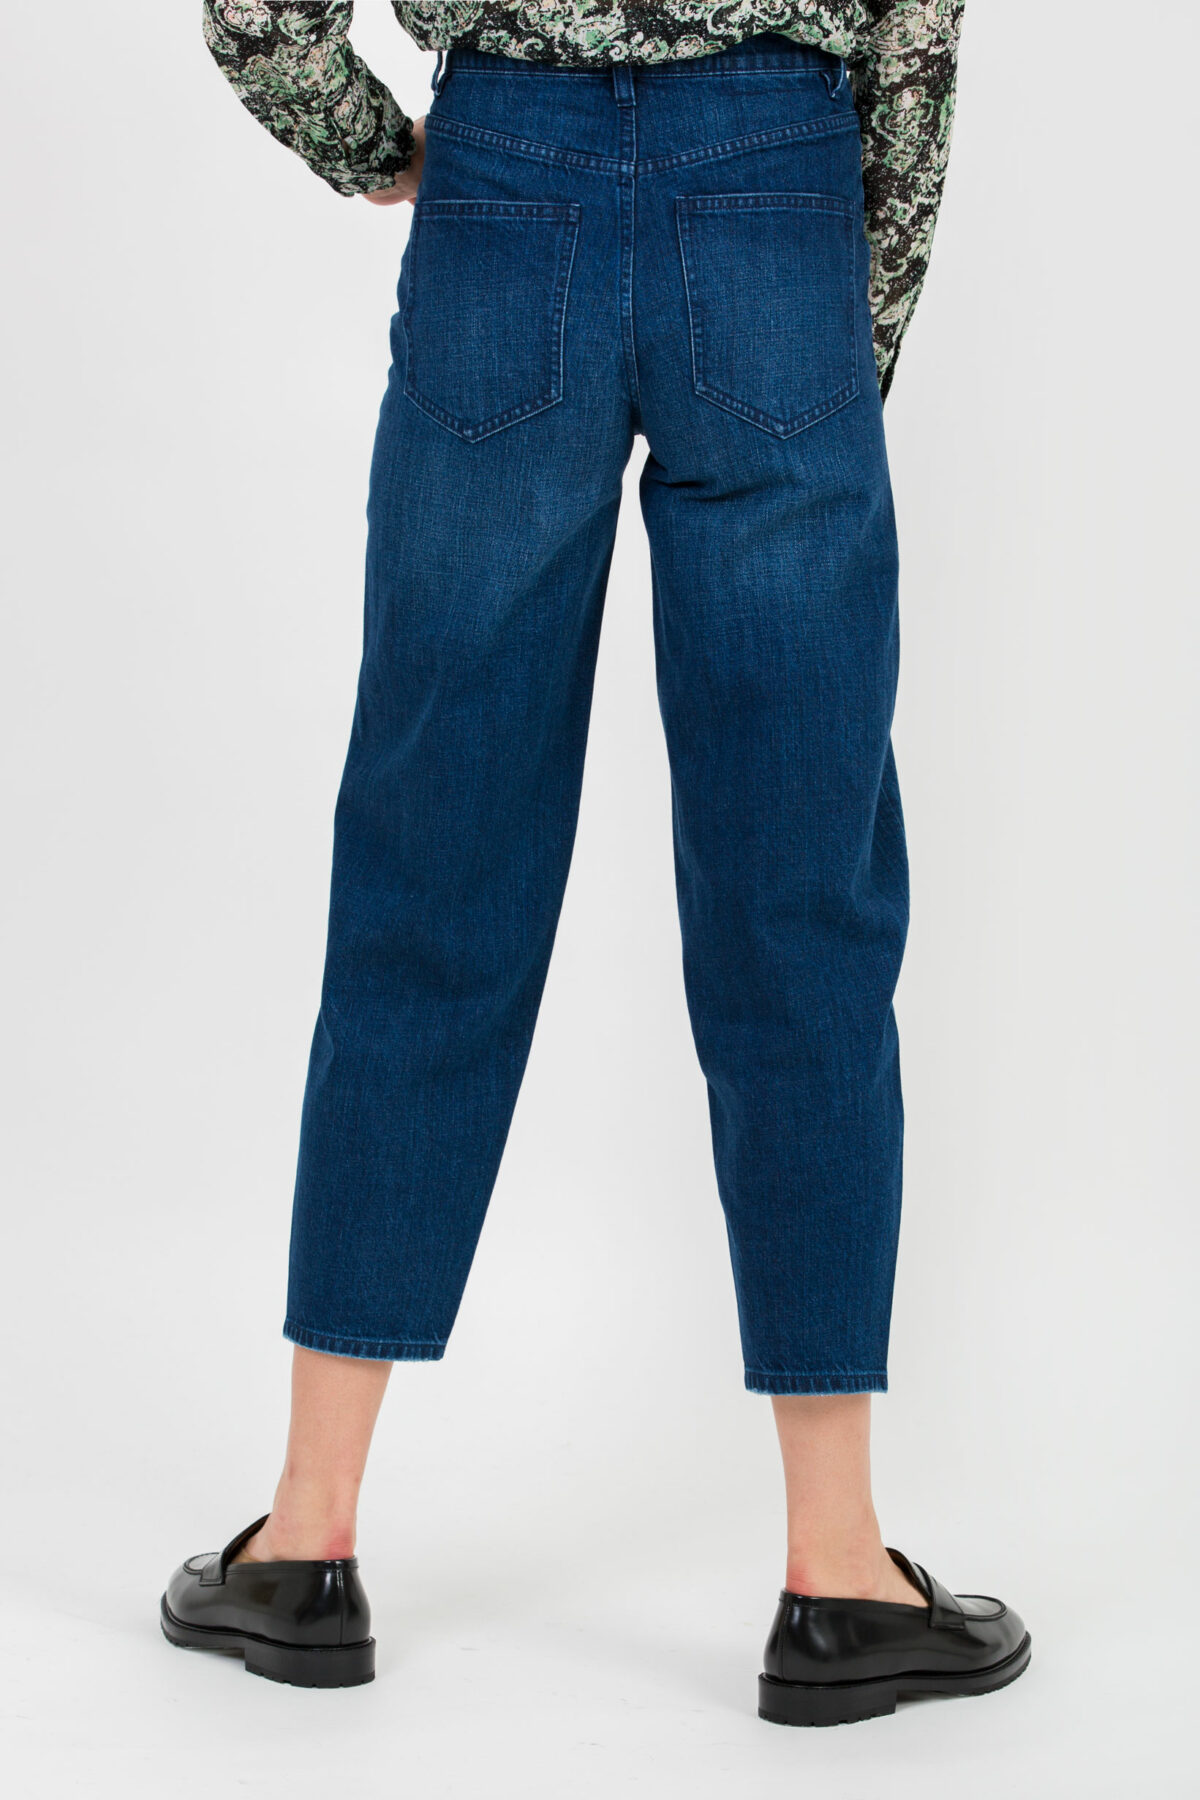 jemma-curve-crop-denim-jeans-blue-labdip-matchboxathens